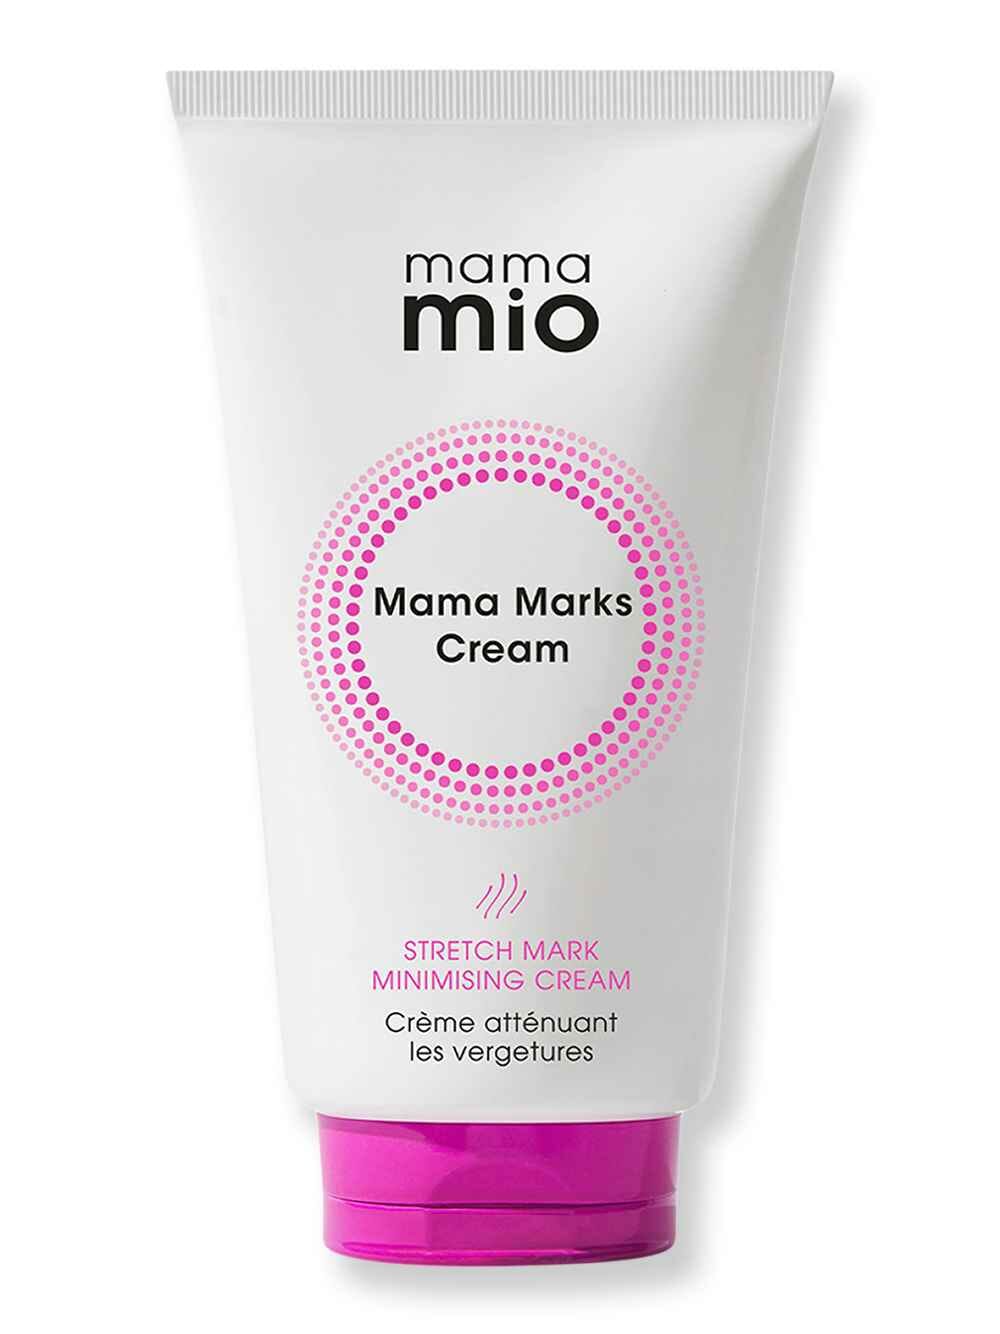 Mama Mio Mama Mio Mama Marks Cream 125 ml Body Treatments 